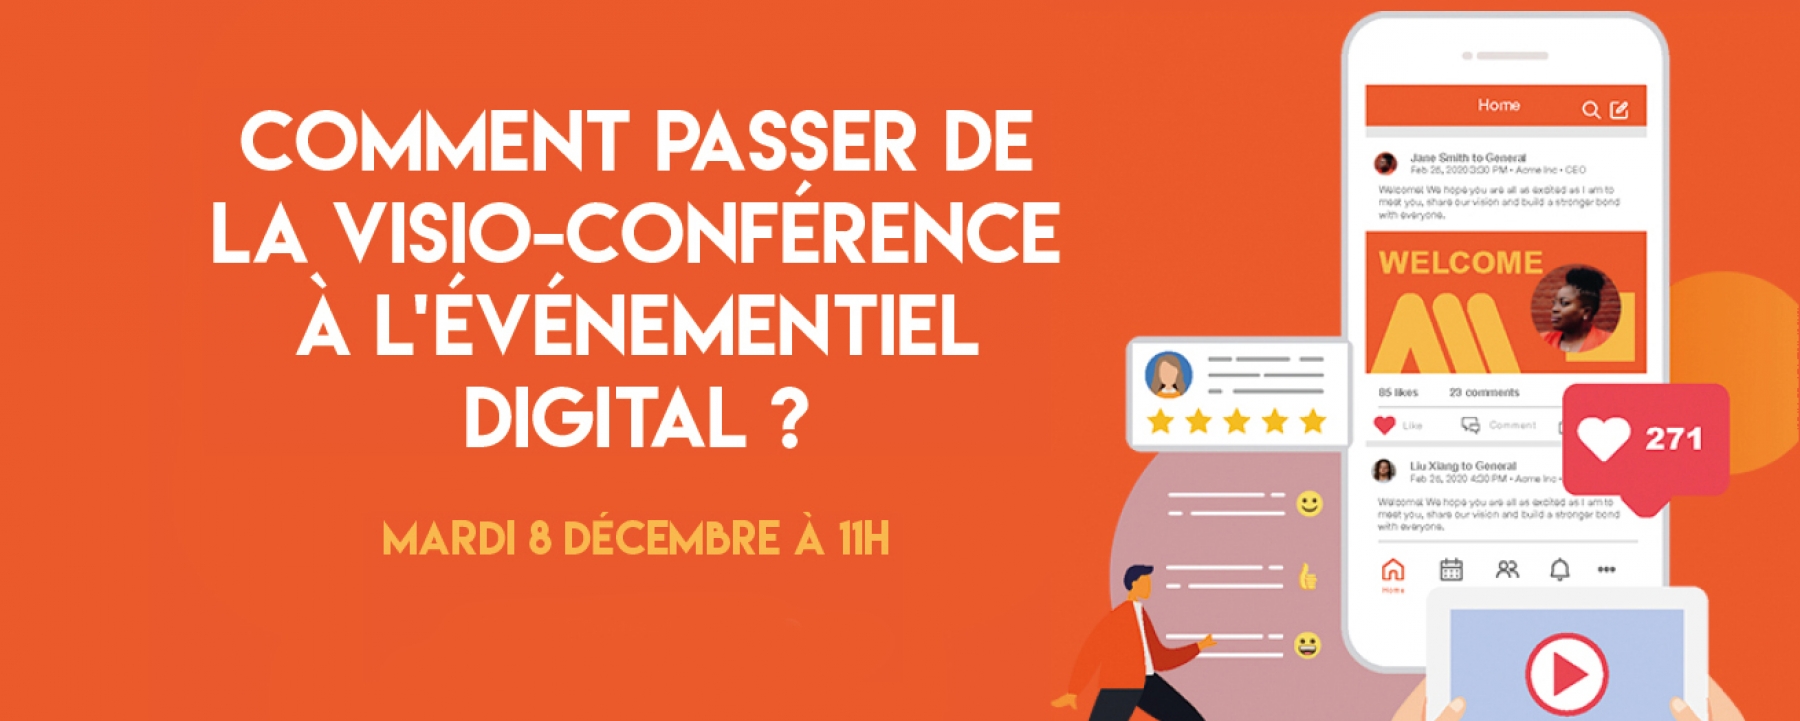 Comment passer de la visio-conférence à l'événementiel digital ?,  un webinar organisé par Stratégies et SpotMe le mardi 8 décembre